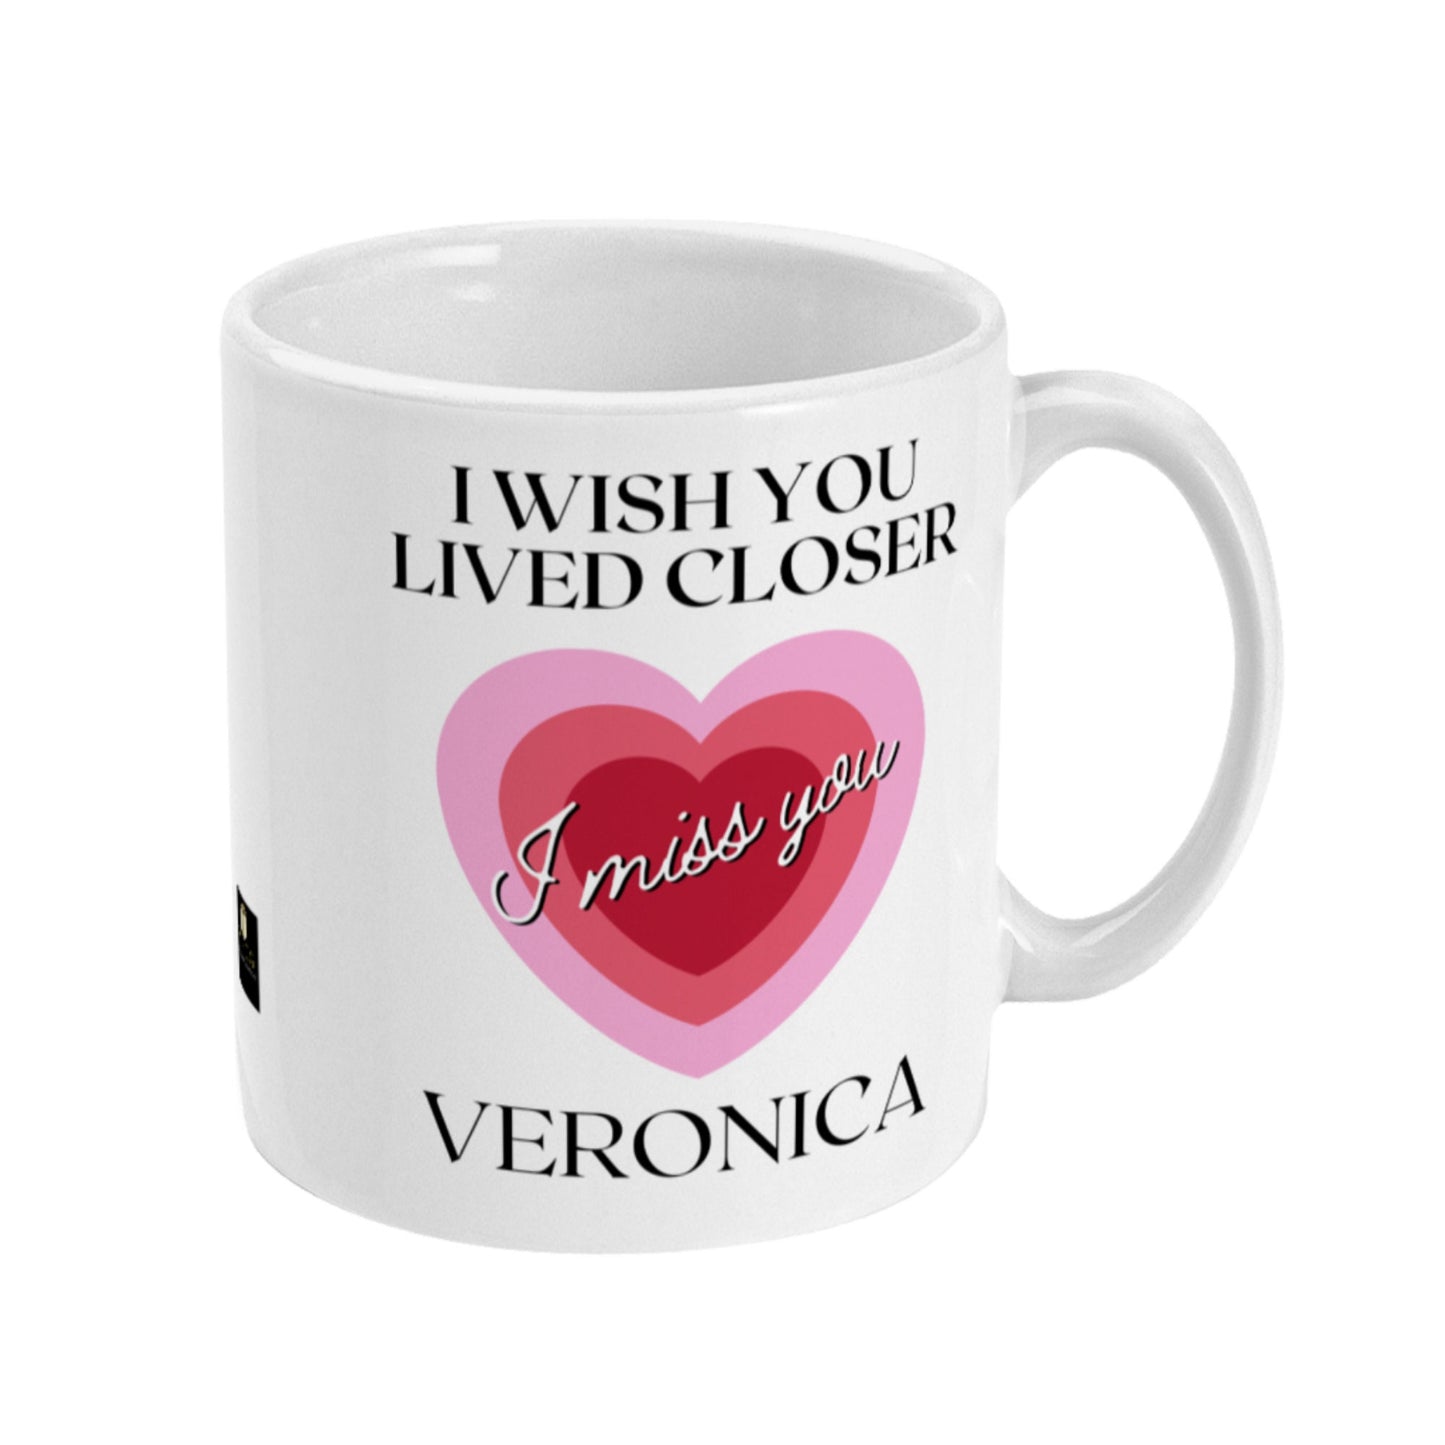 I wish you lived closer personalised mug